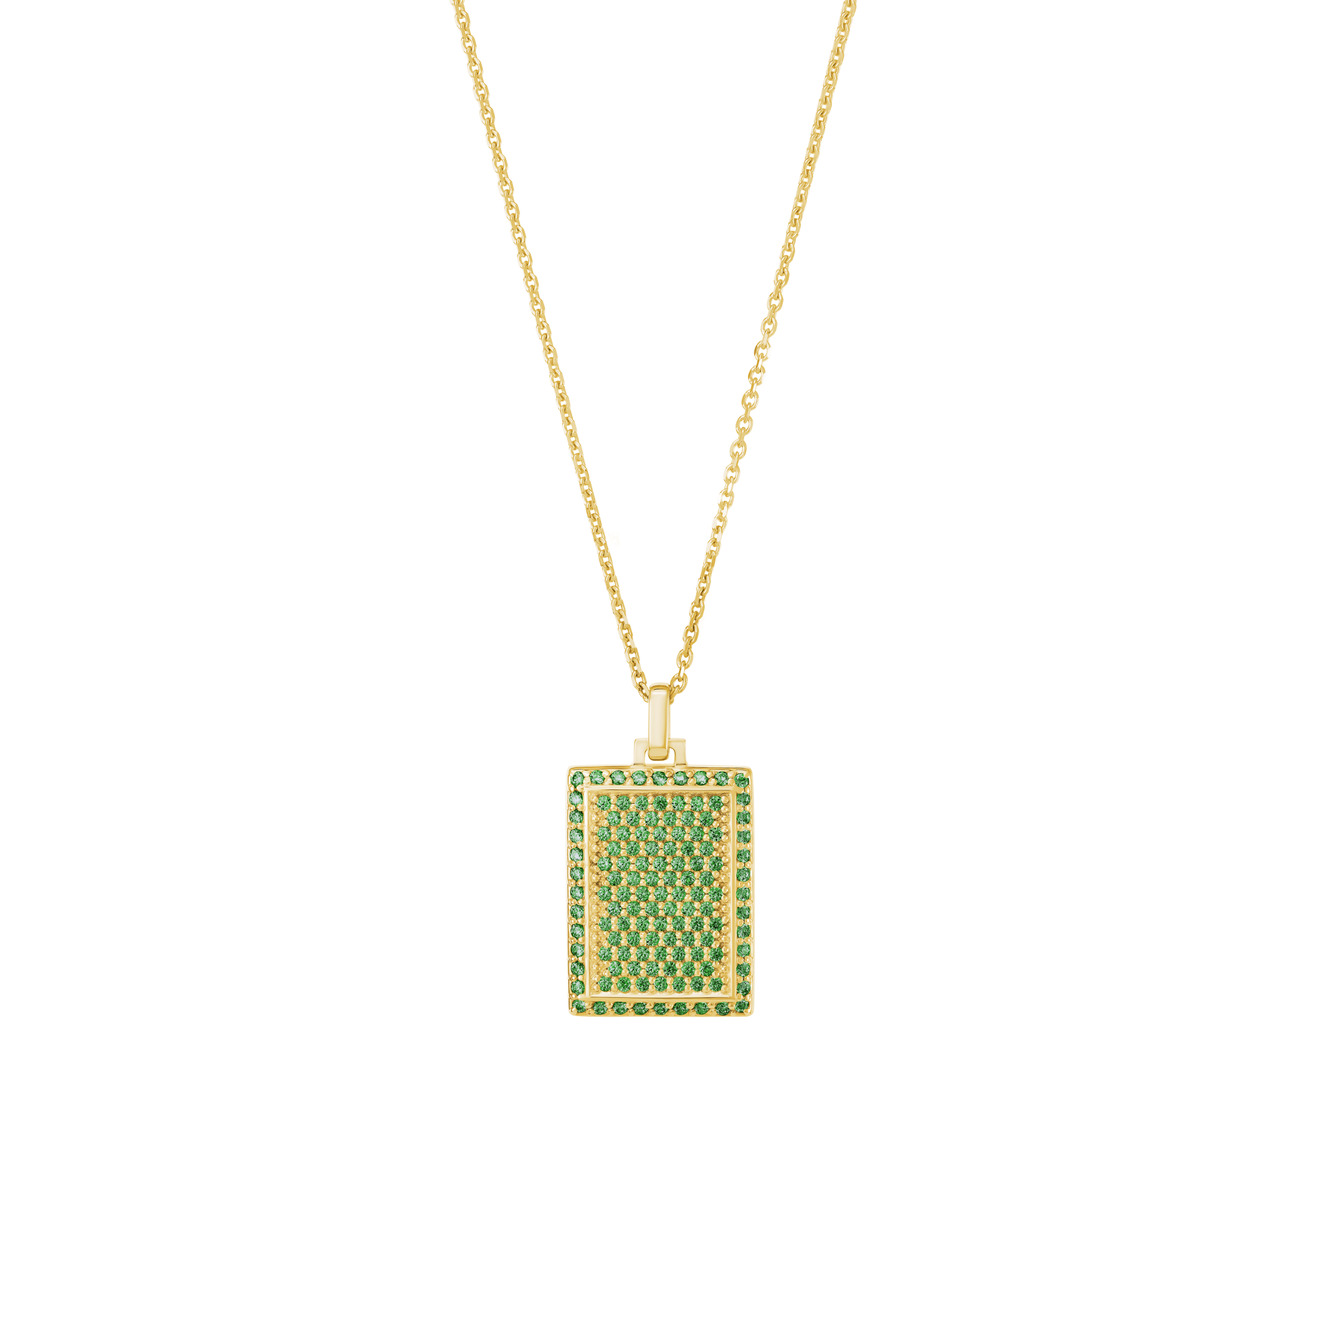 Jewlia Позолоченный прямоугольный медальон из серебра с зелеными кристаллами jewlia позолоченный прямоугольный медальон из серебра с зелеными кристаллами